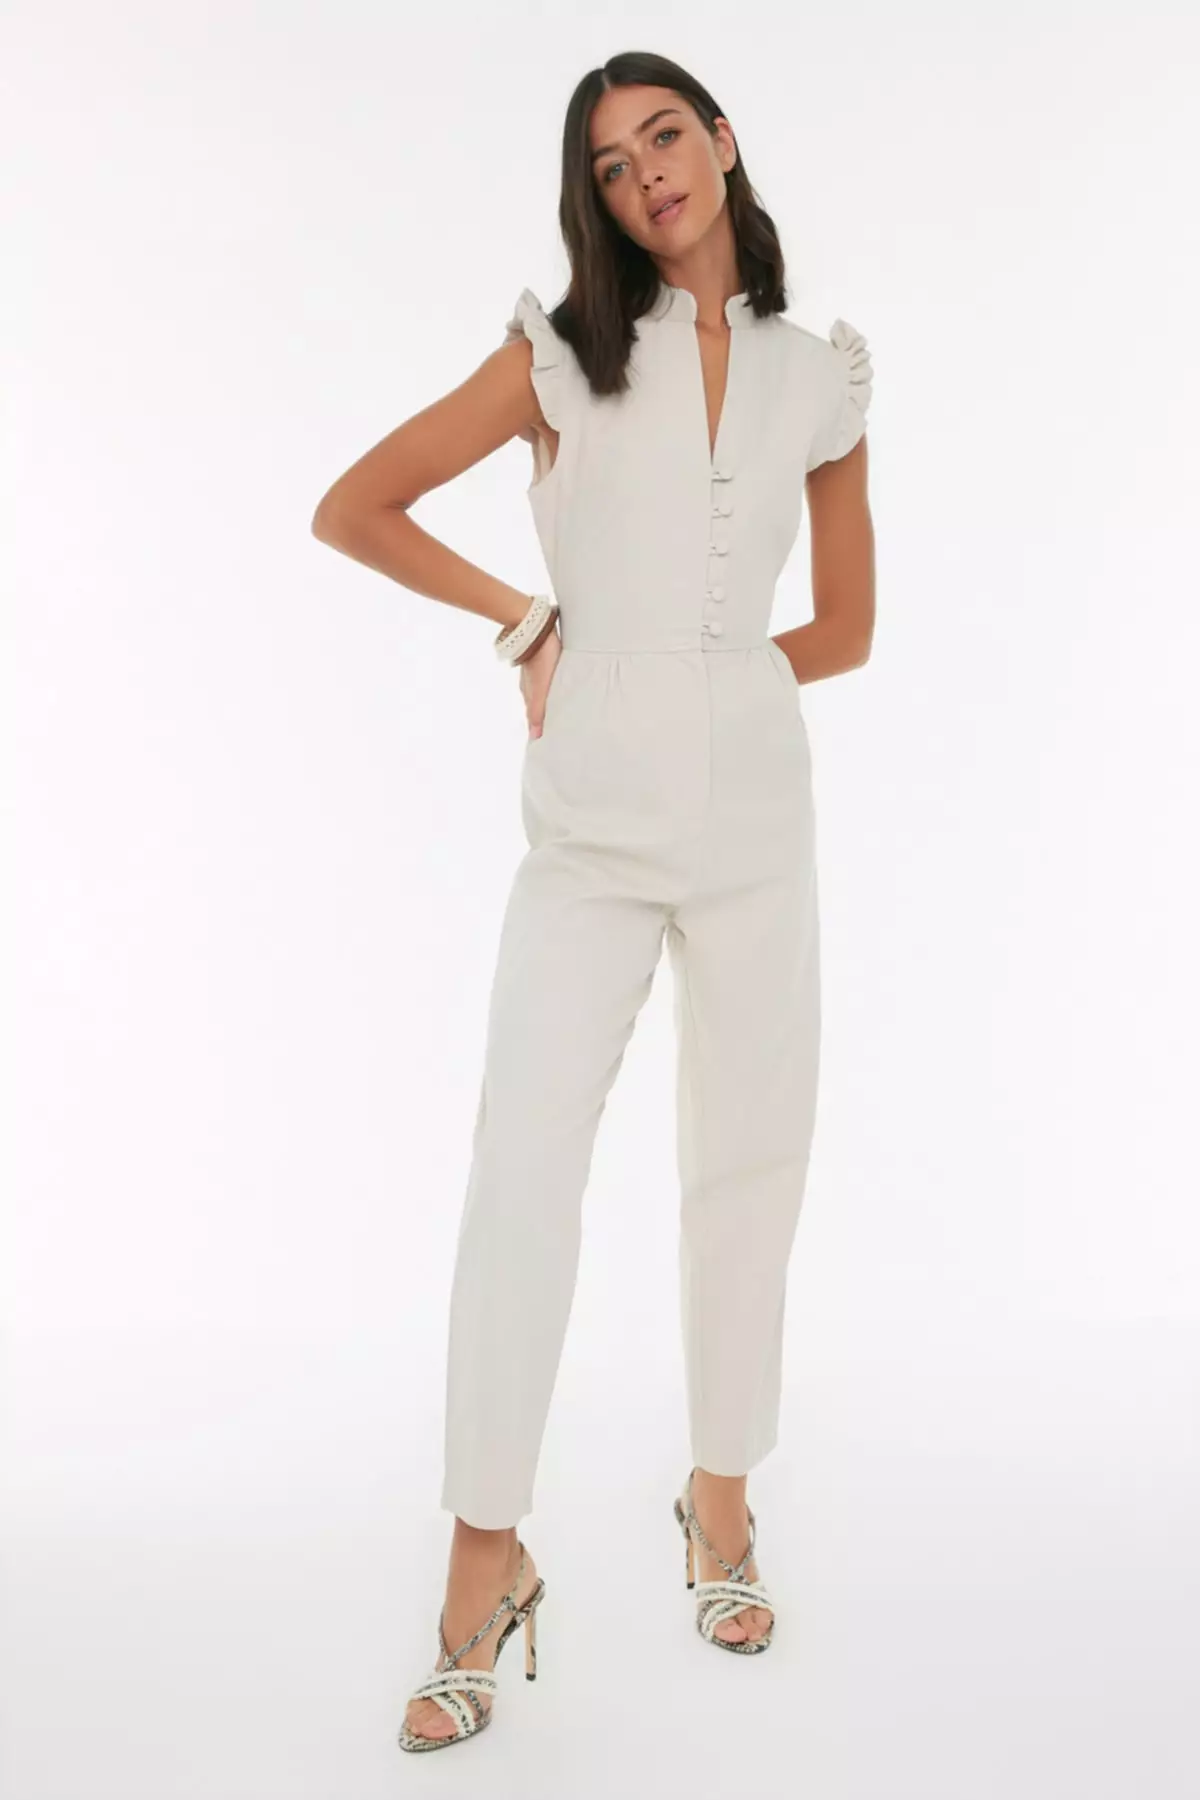 Trendyol Long Sleeve Jumpsuit 2024, Buy Trendyol Online